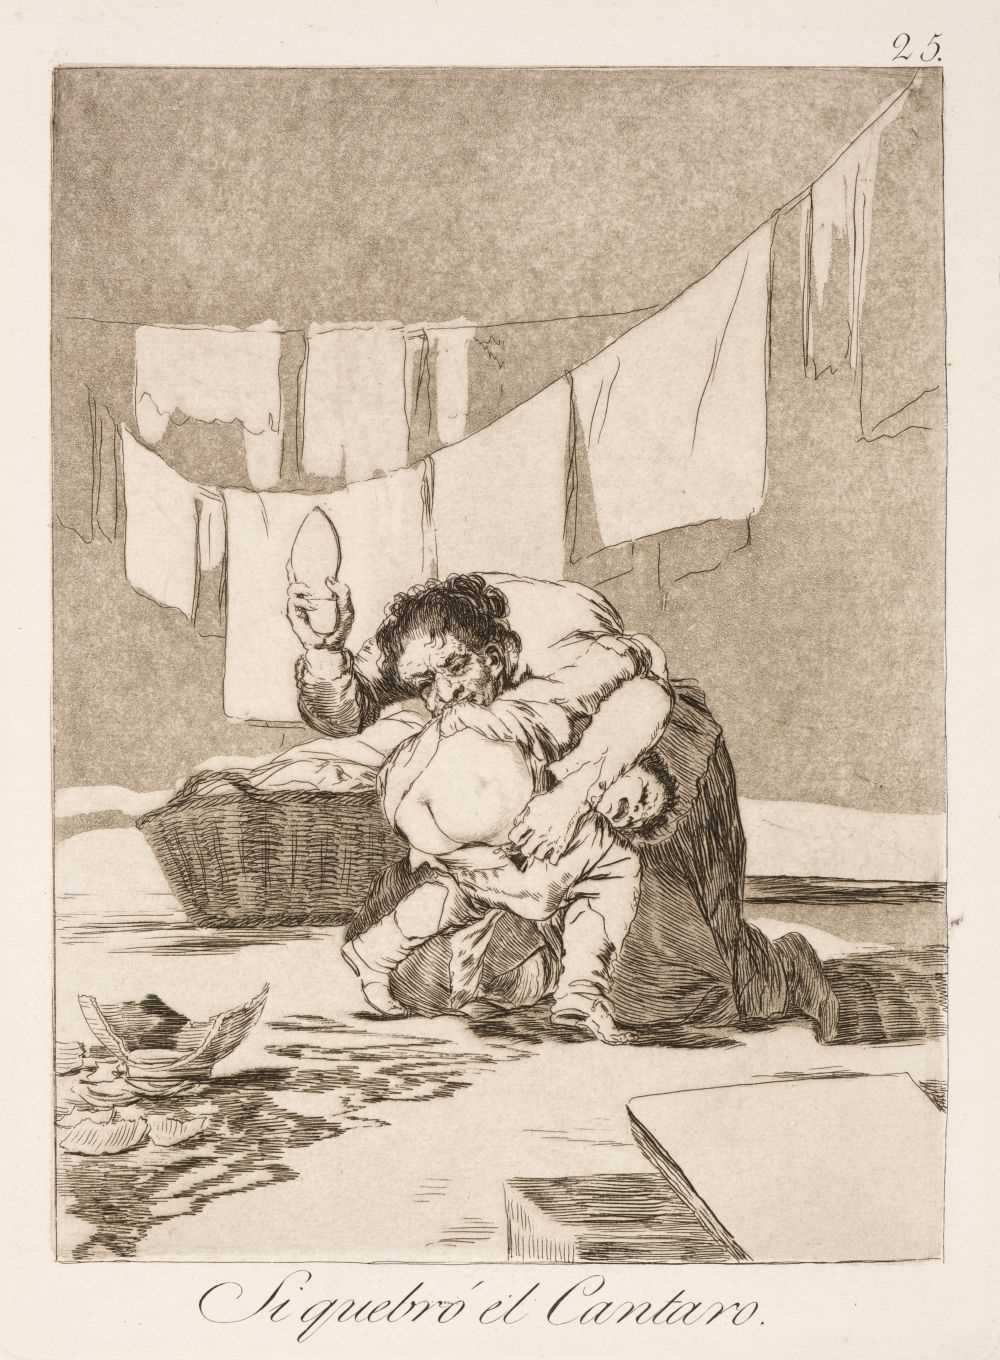 Lot 341 - Goya (Francisco de, 1746-1828). Si quebro el Cantaro, 1799